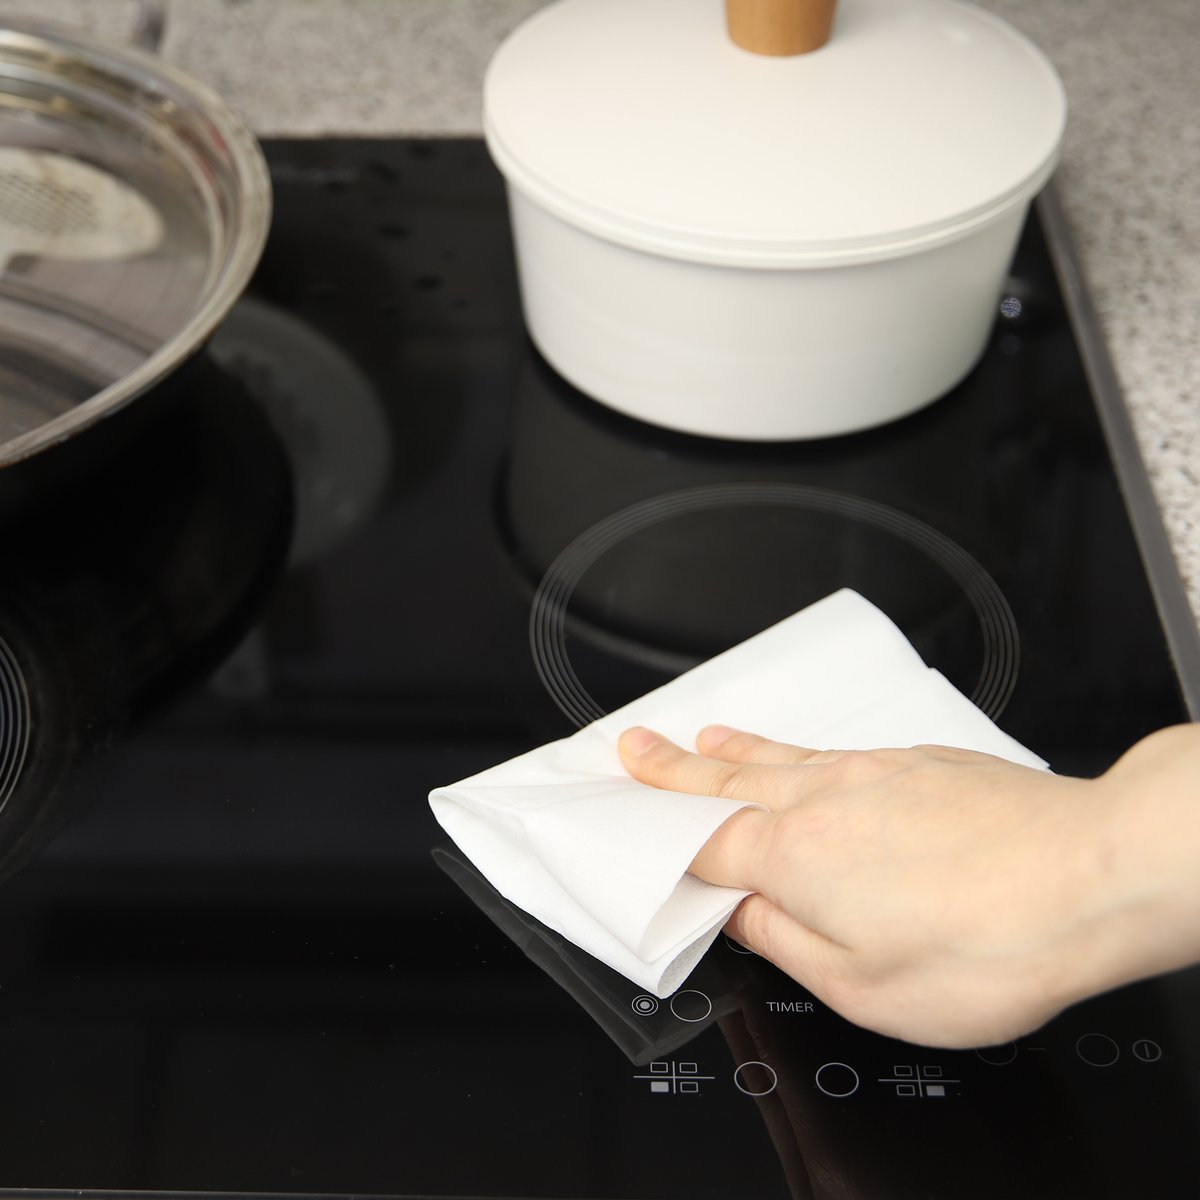 韓國食品-[JAJU] 廚房專用去油清潔濕紙巾 30 x 18cm